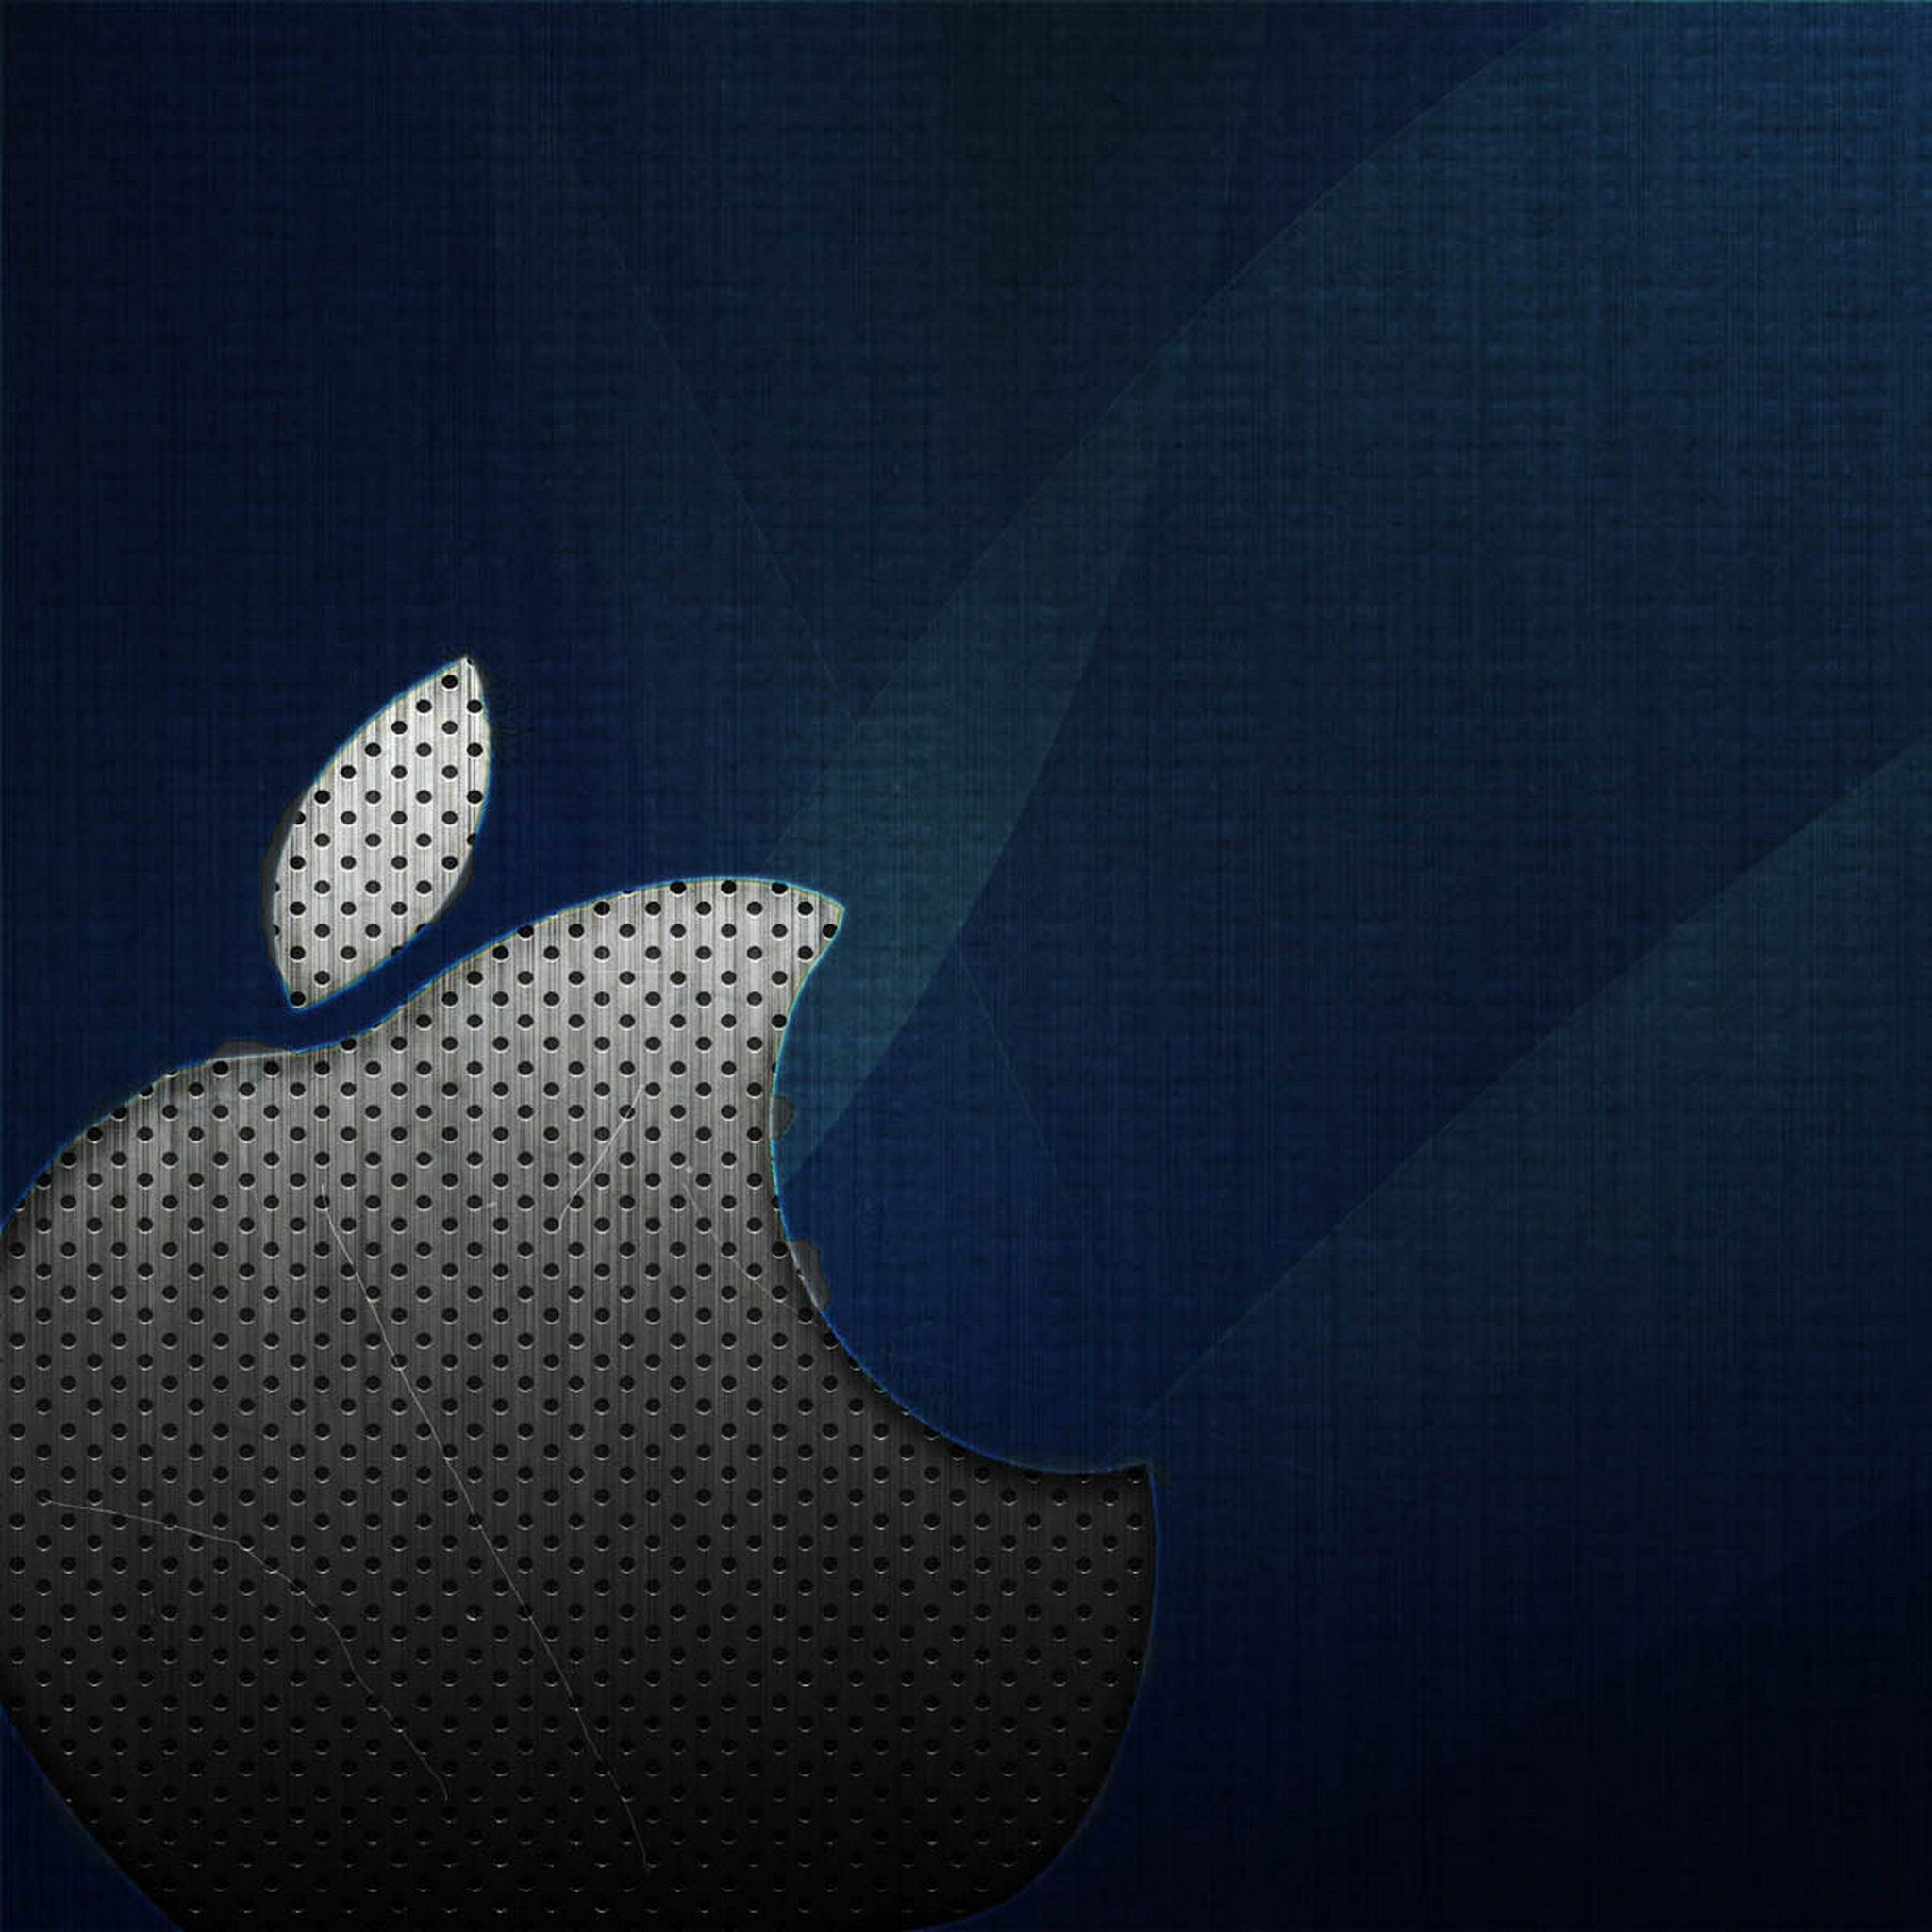 苹果logo创意高清NewiPad壁纸 第十一季